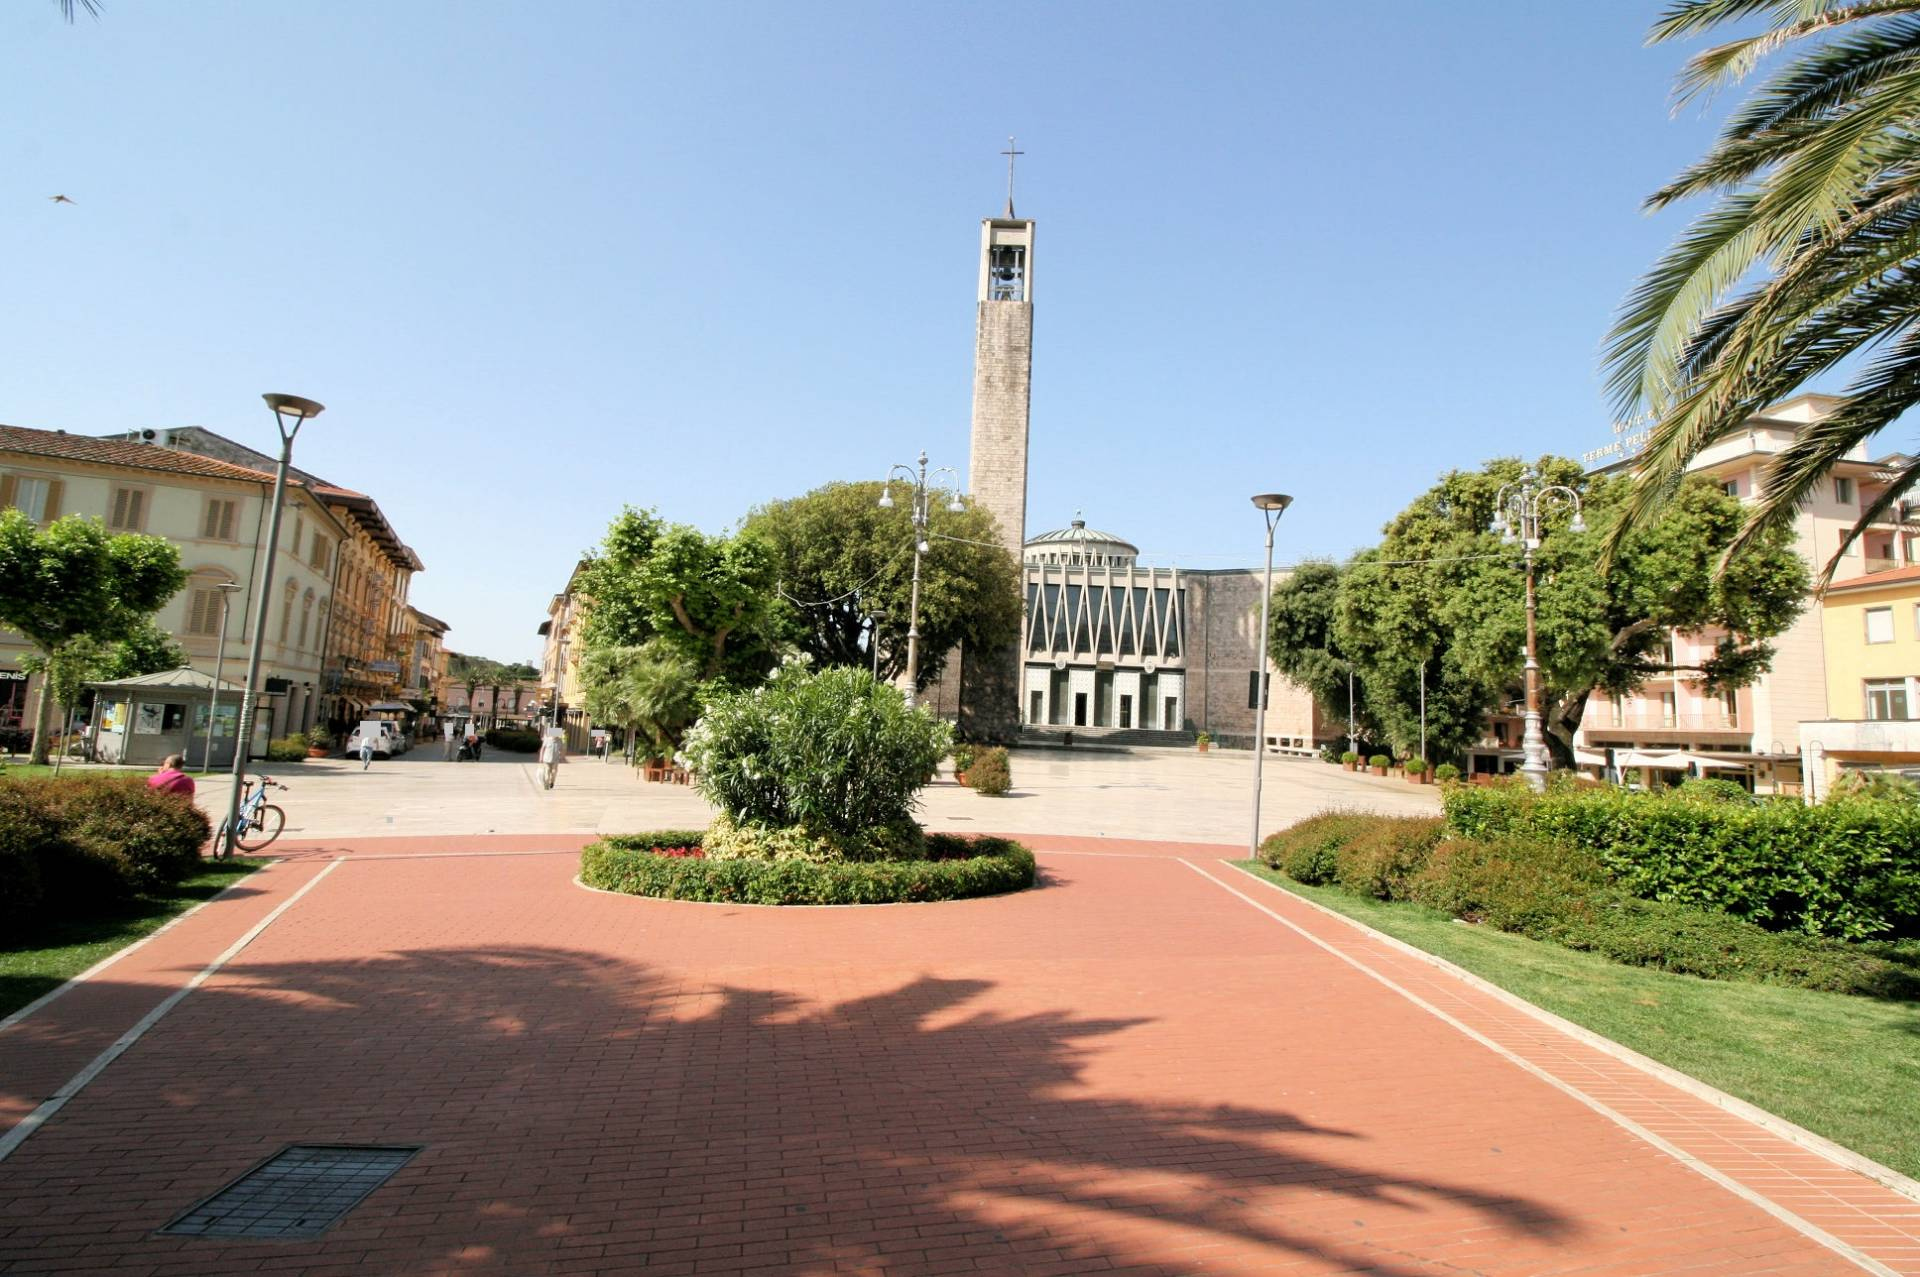 1034-Hotel in posizione centrale-Montecatini-Terme-1 Agenzia Immobiliare ASIP